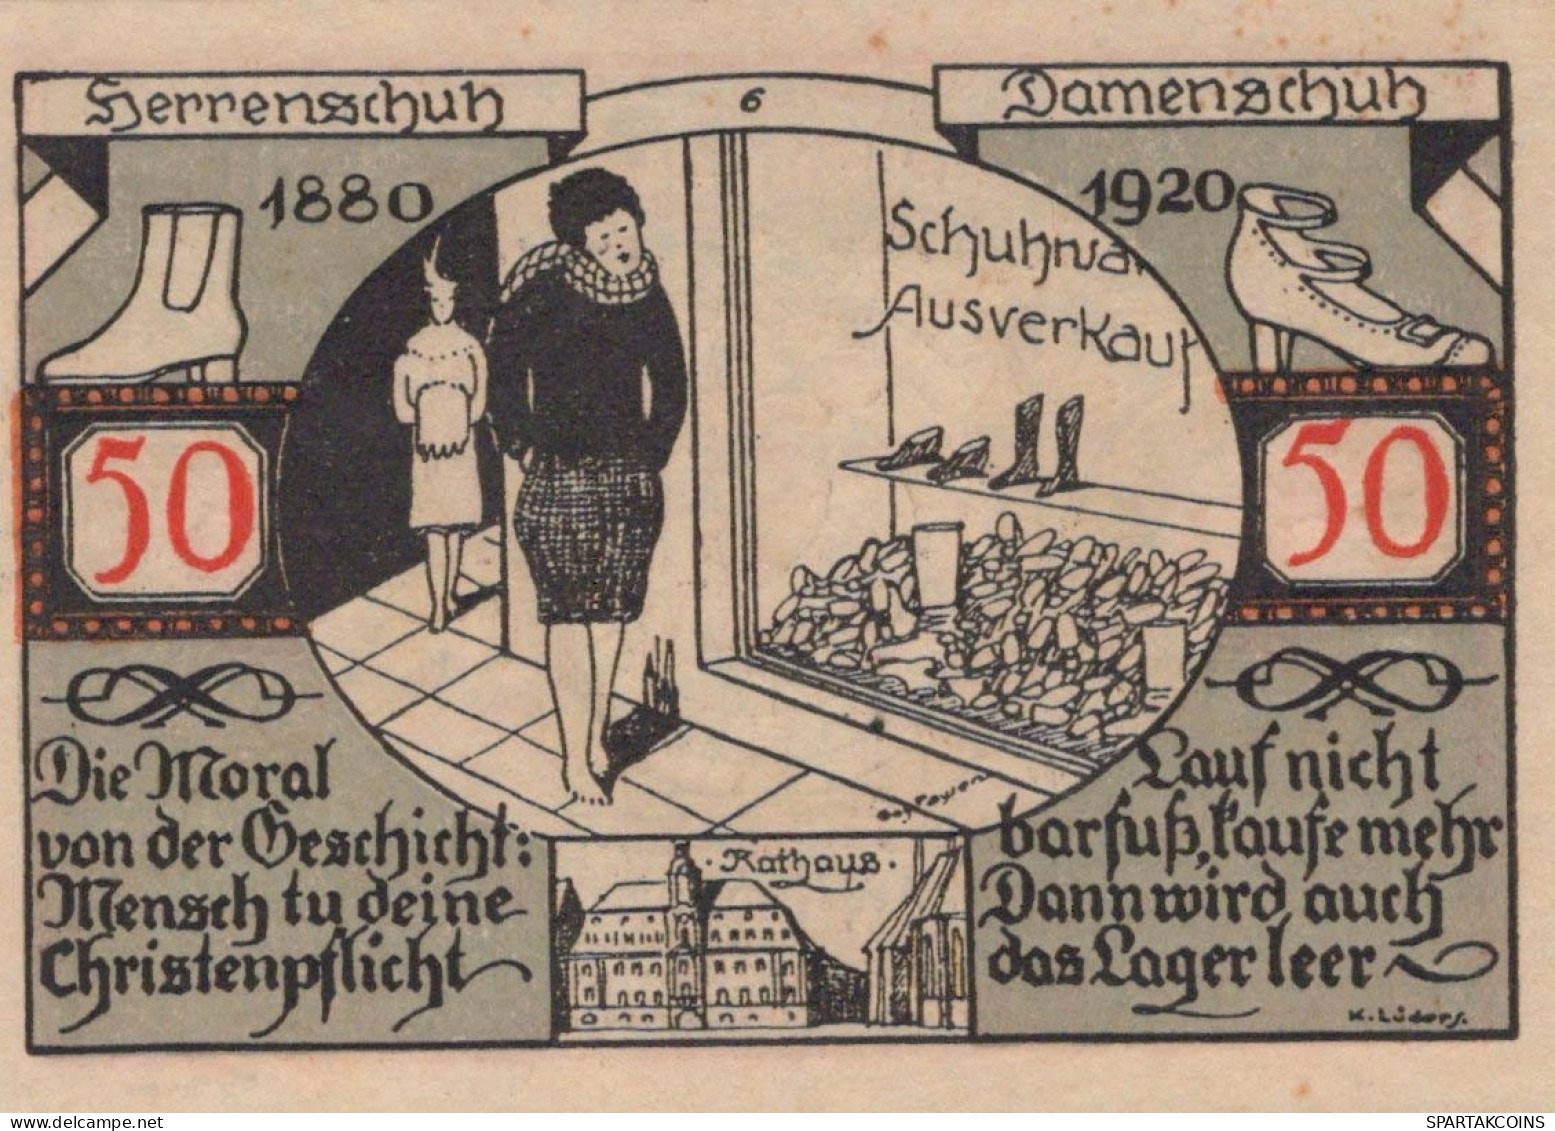 50 PFENNIG 1921 Stadt WEISSENFELS Saxony DEUTSCHLAND Notgeld Banknote #PF934 - [11] Local Banknote Issues